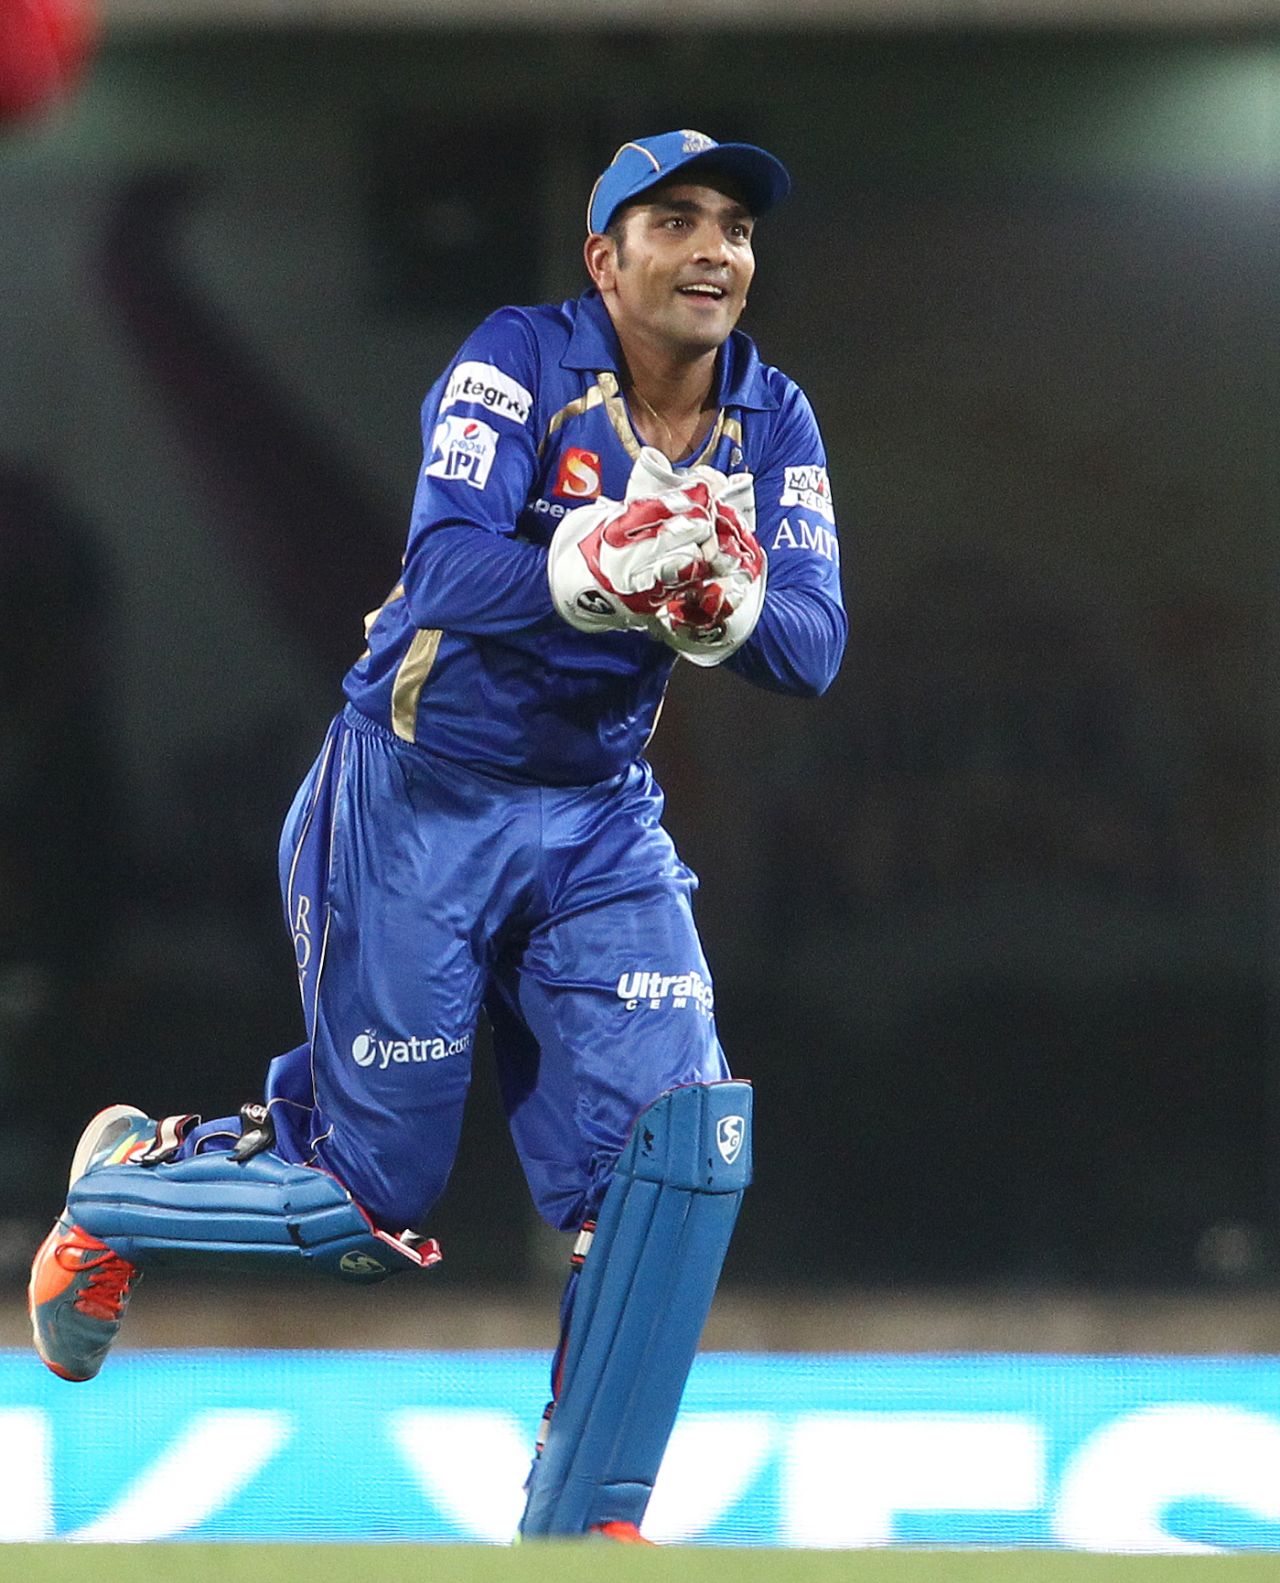 A cheerful Dishant Yagnik after taking Dwayne Smith's catch, Chennai Super Kings v Rajasthan Royals, IPL 2014, Ranchi, May 13, 2014